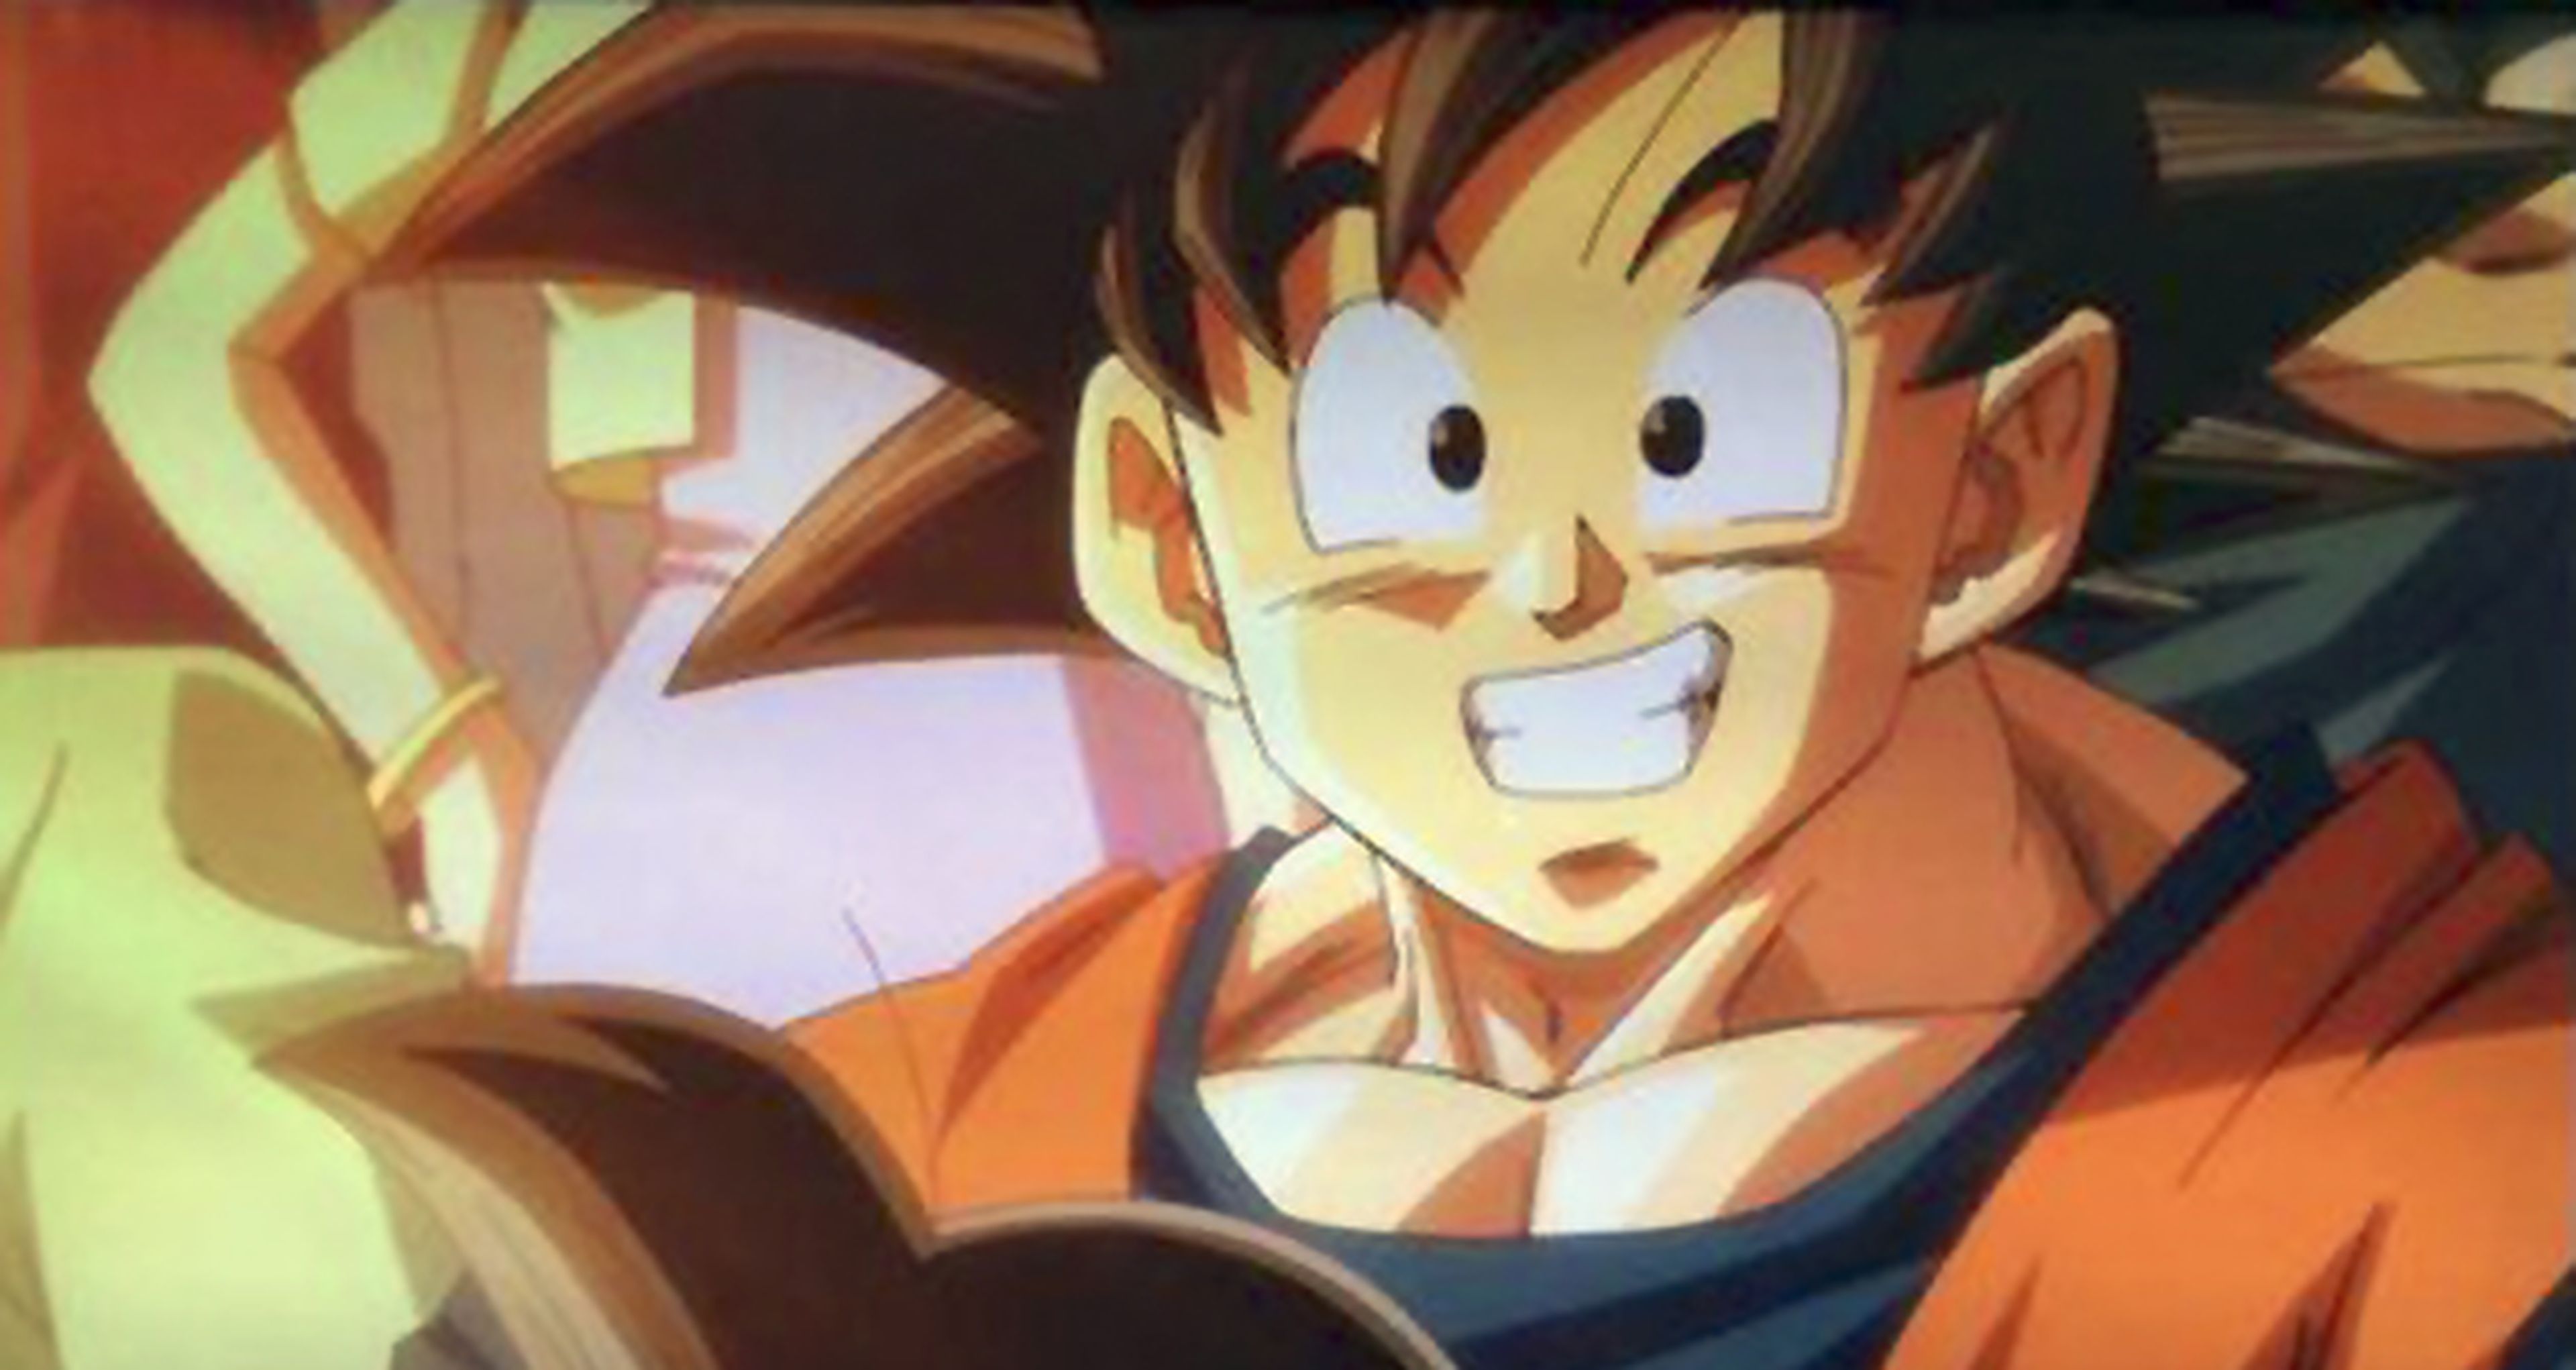 Dragon Ball Super, detalles sobre su lanzamiento en DVD y Blu-Ray en Japón